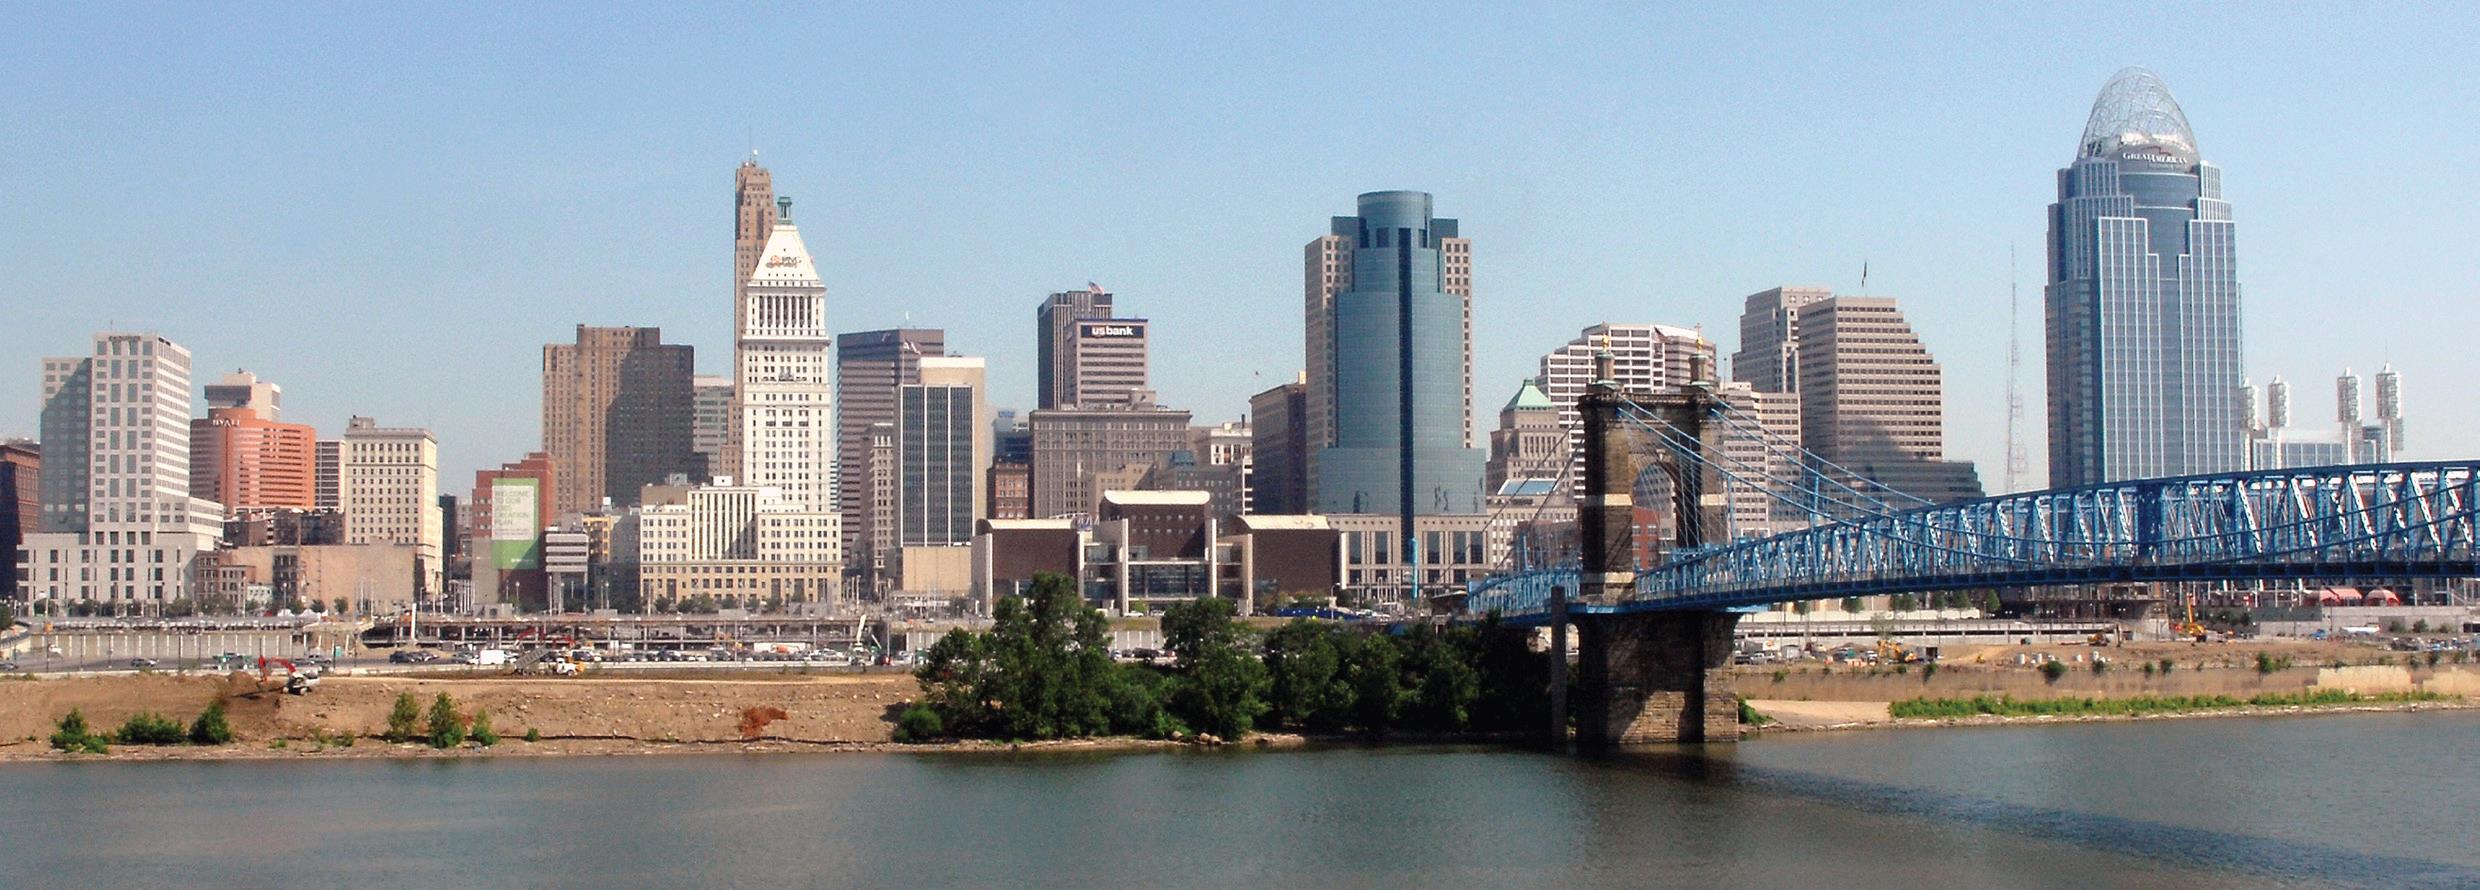 Cincinnati, OH cityscape